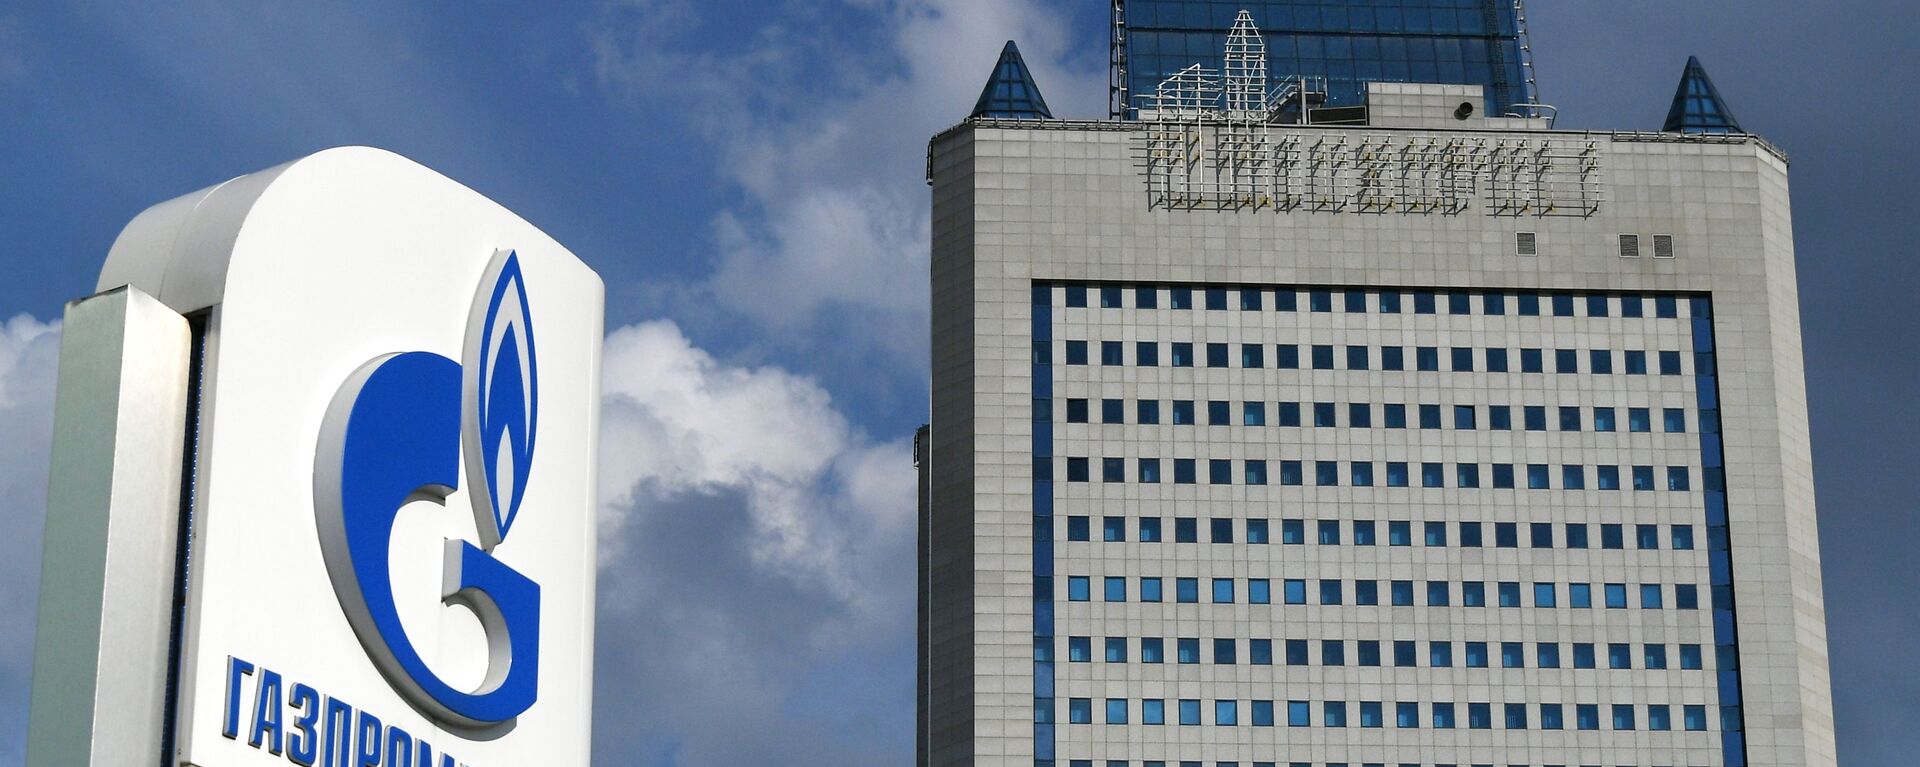 Здание компании Газпром в Москве  - Sputnik Грузия, 1920, 24.09.2021